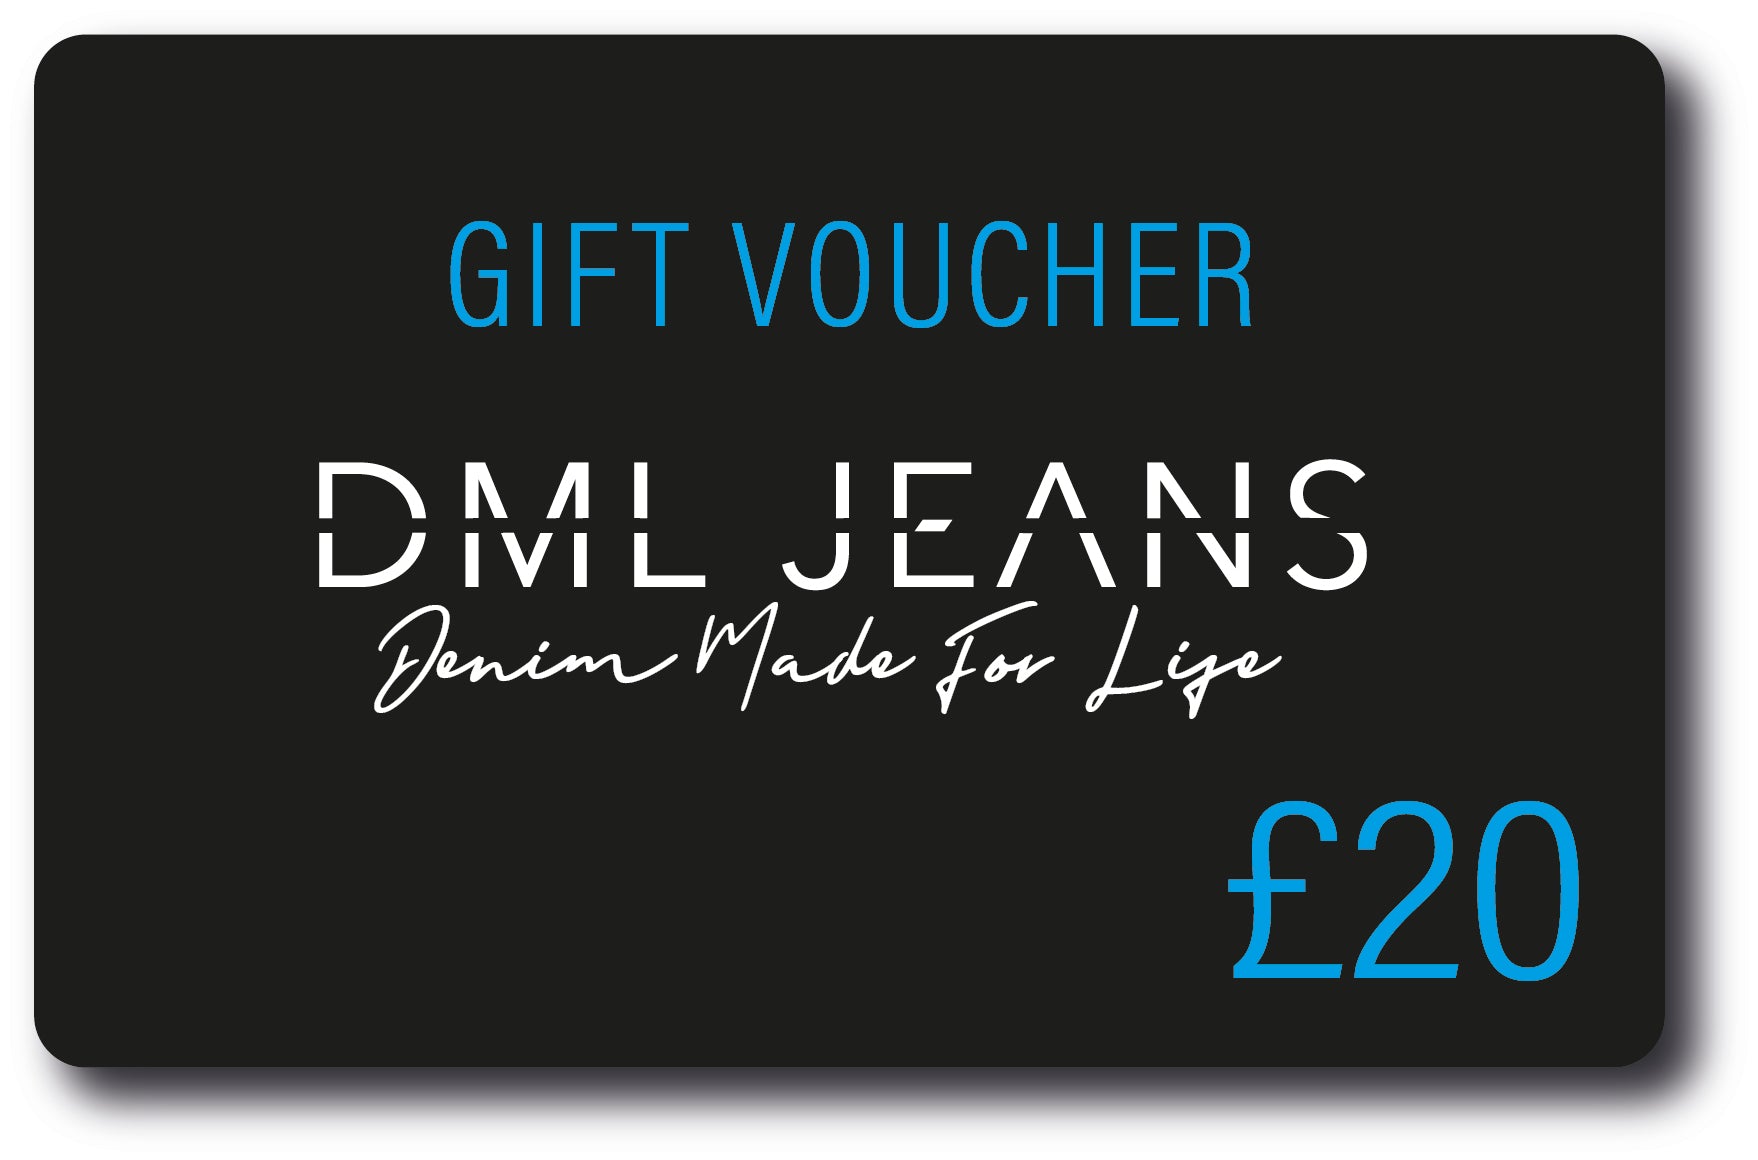 DML Gift Voucher - DML Jeans 